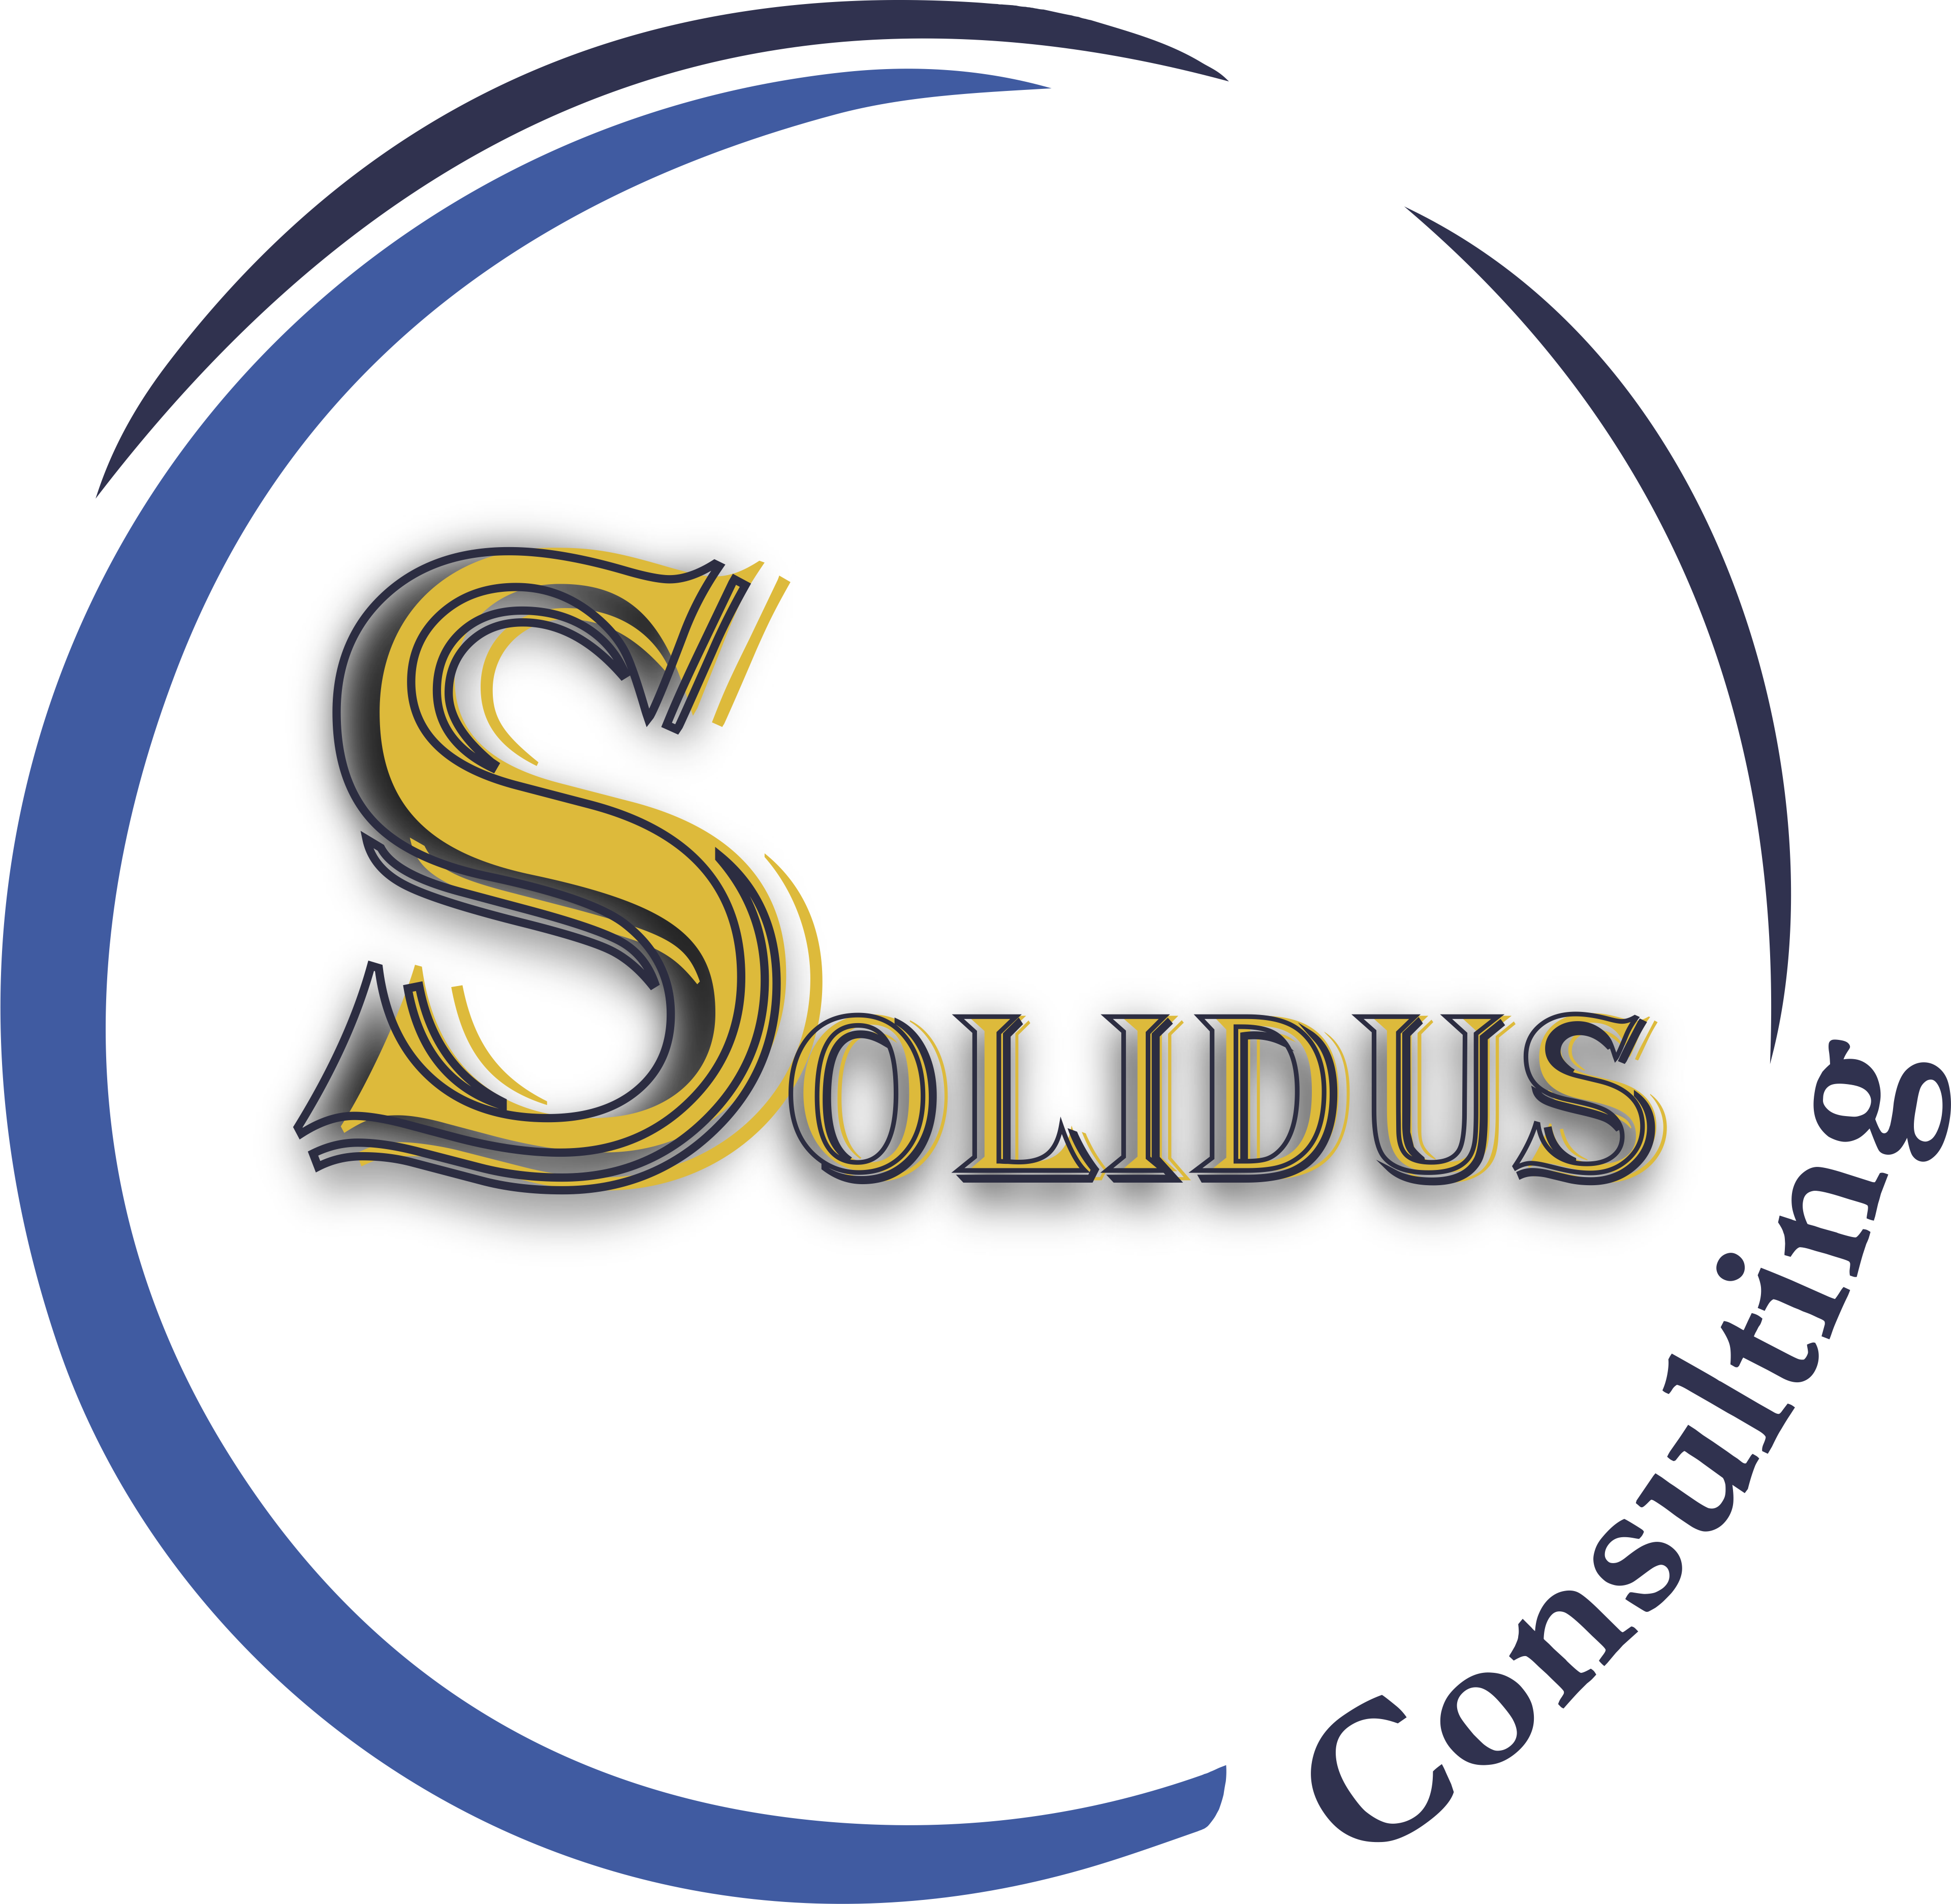 Solidus Consulting